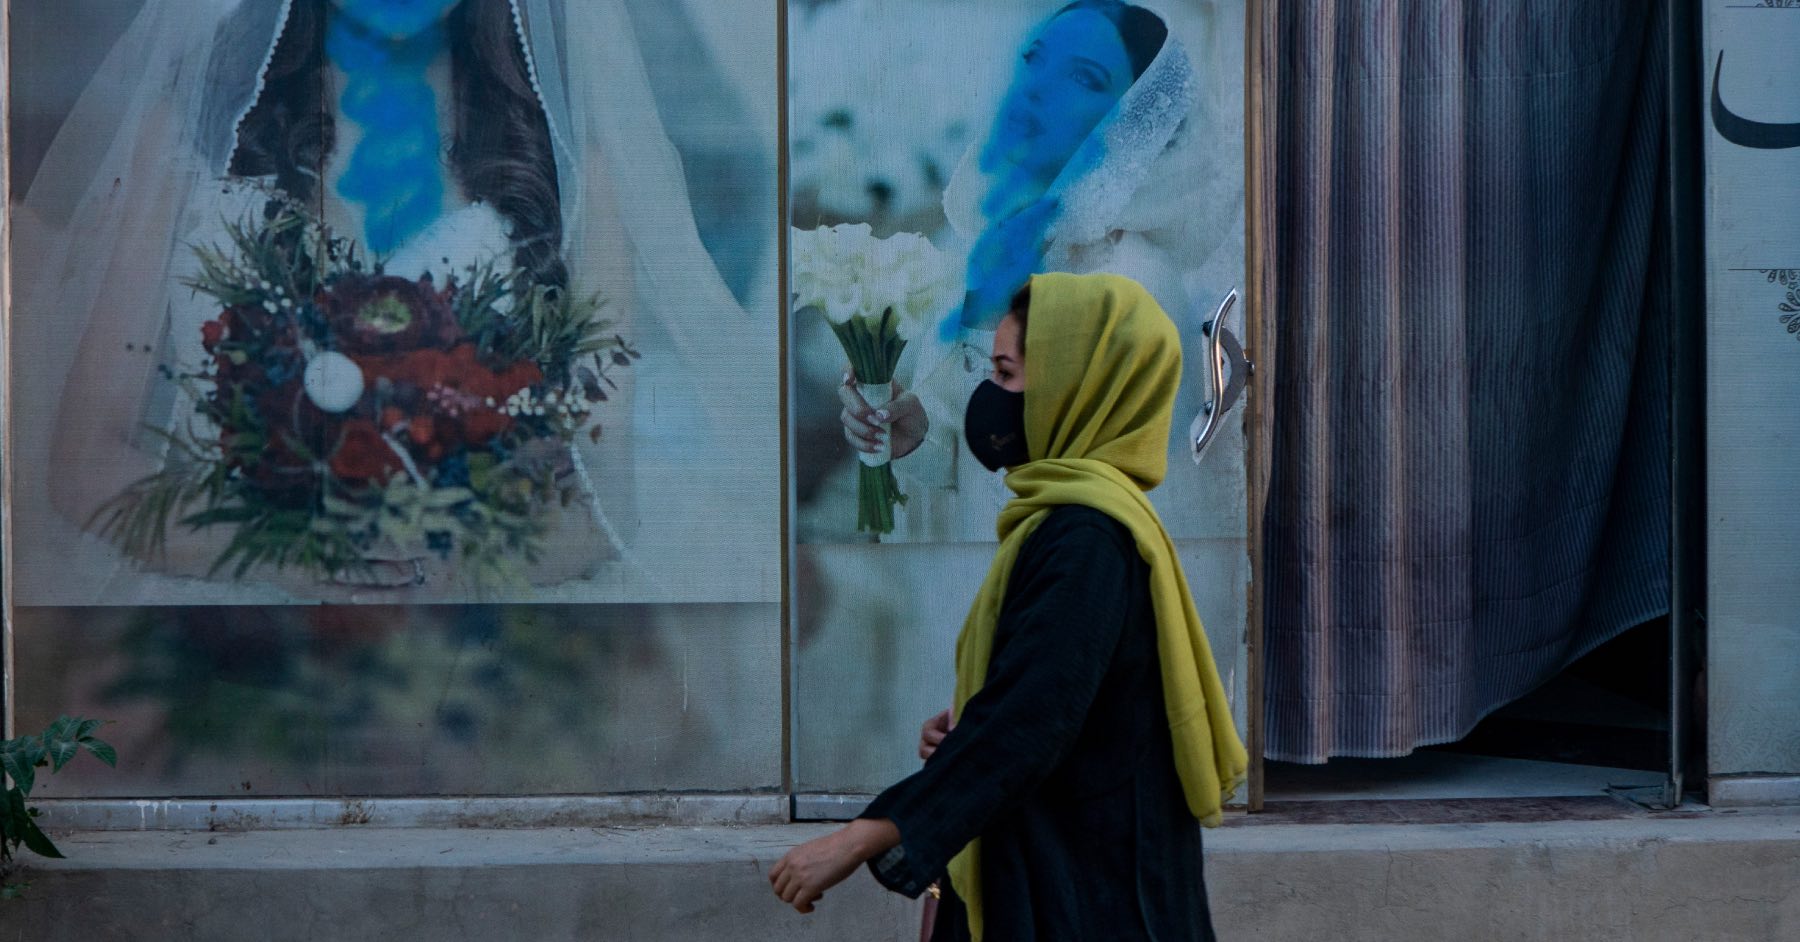 ავღანეთში ქალების თავისუფლების განმსაზღვრელი უკანასკნელი სივრცეც გაქრა